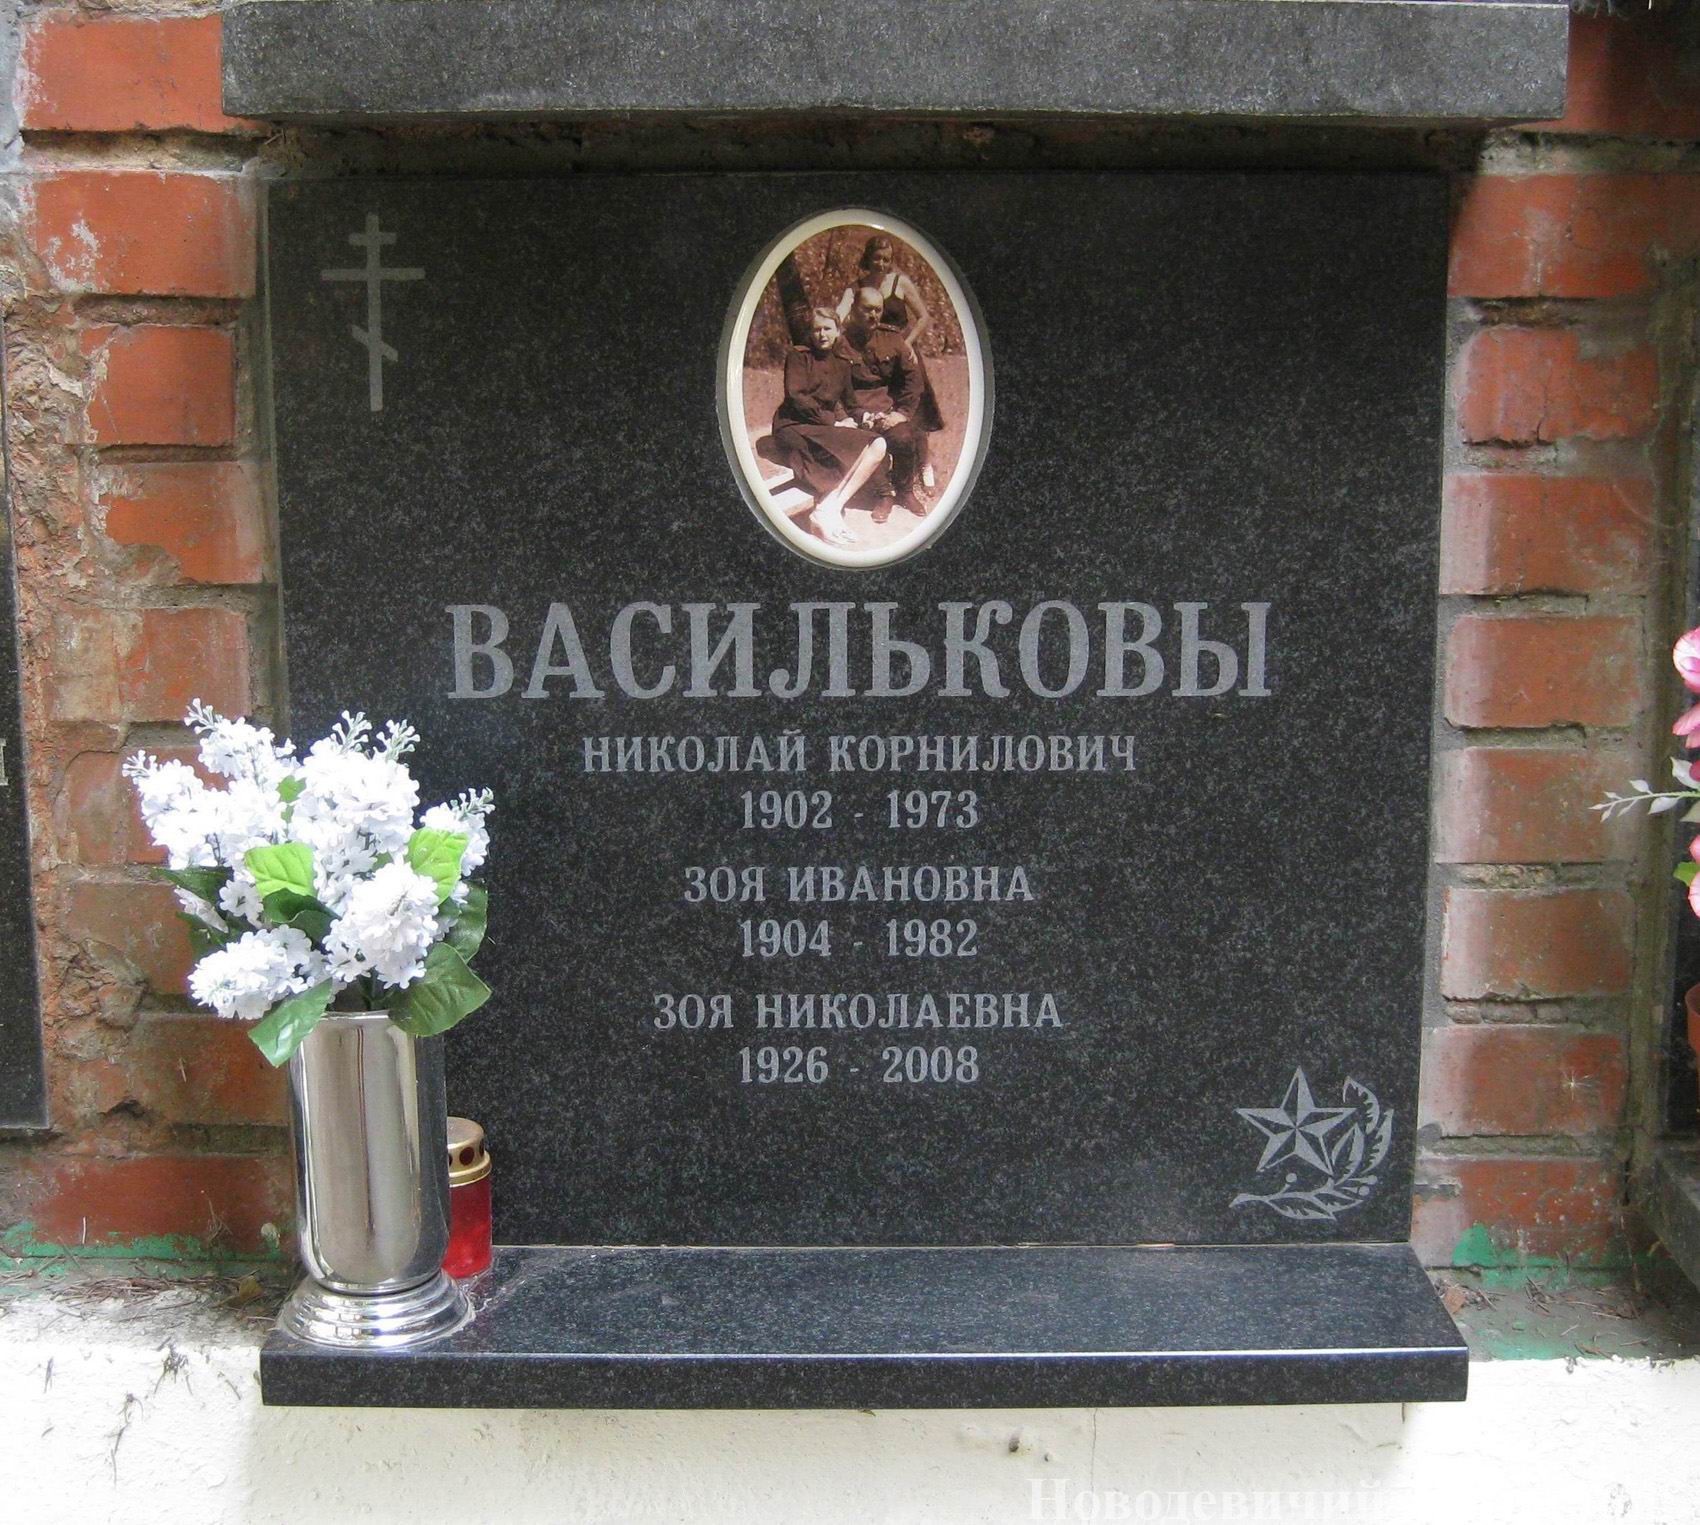 Плита на нише Васильковых Н.К. (1902-1973) и З.Н. (1926-2008), на Новодевичьем кладбище (колумбарий [134]-5-4).